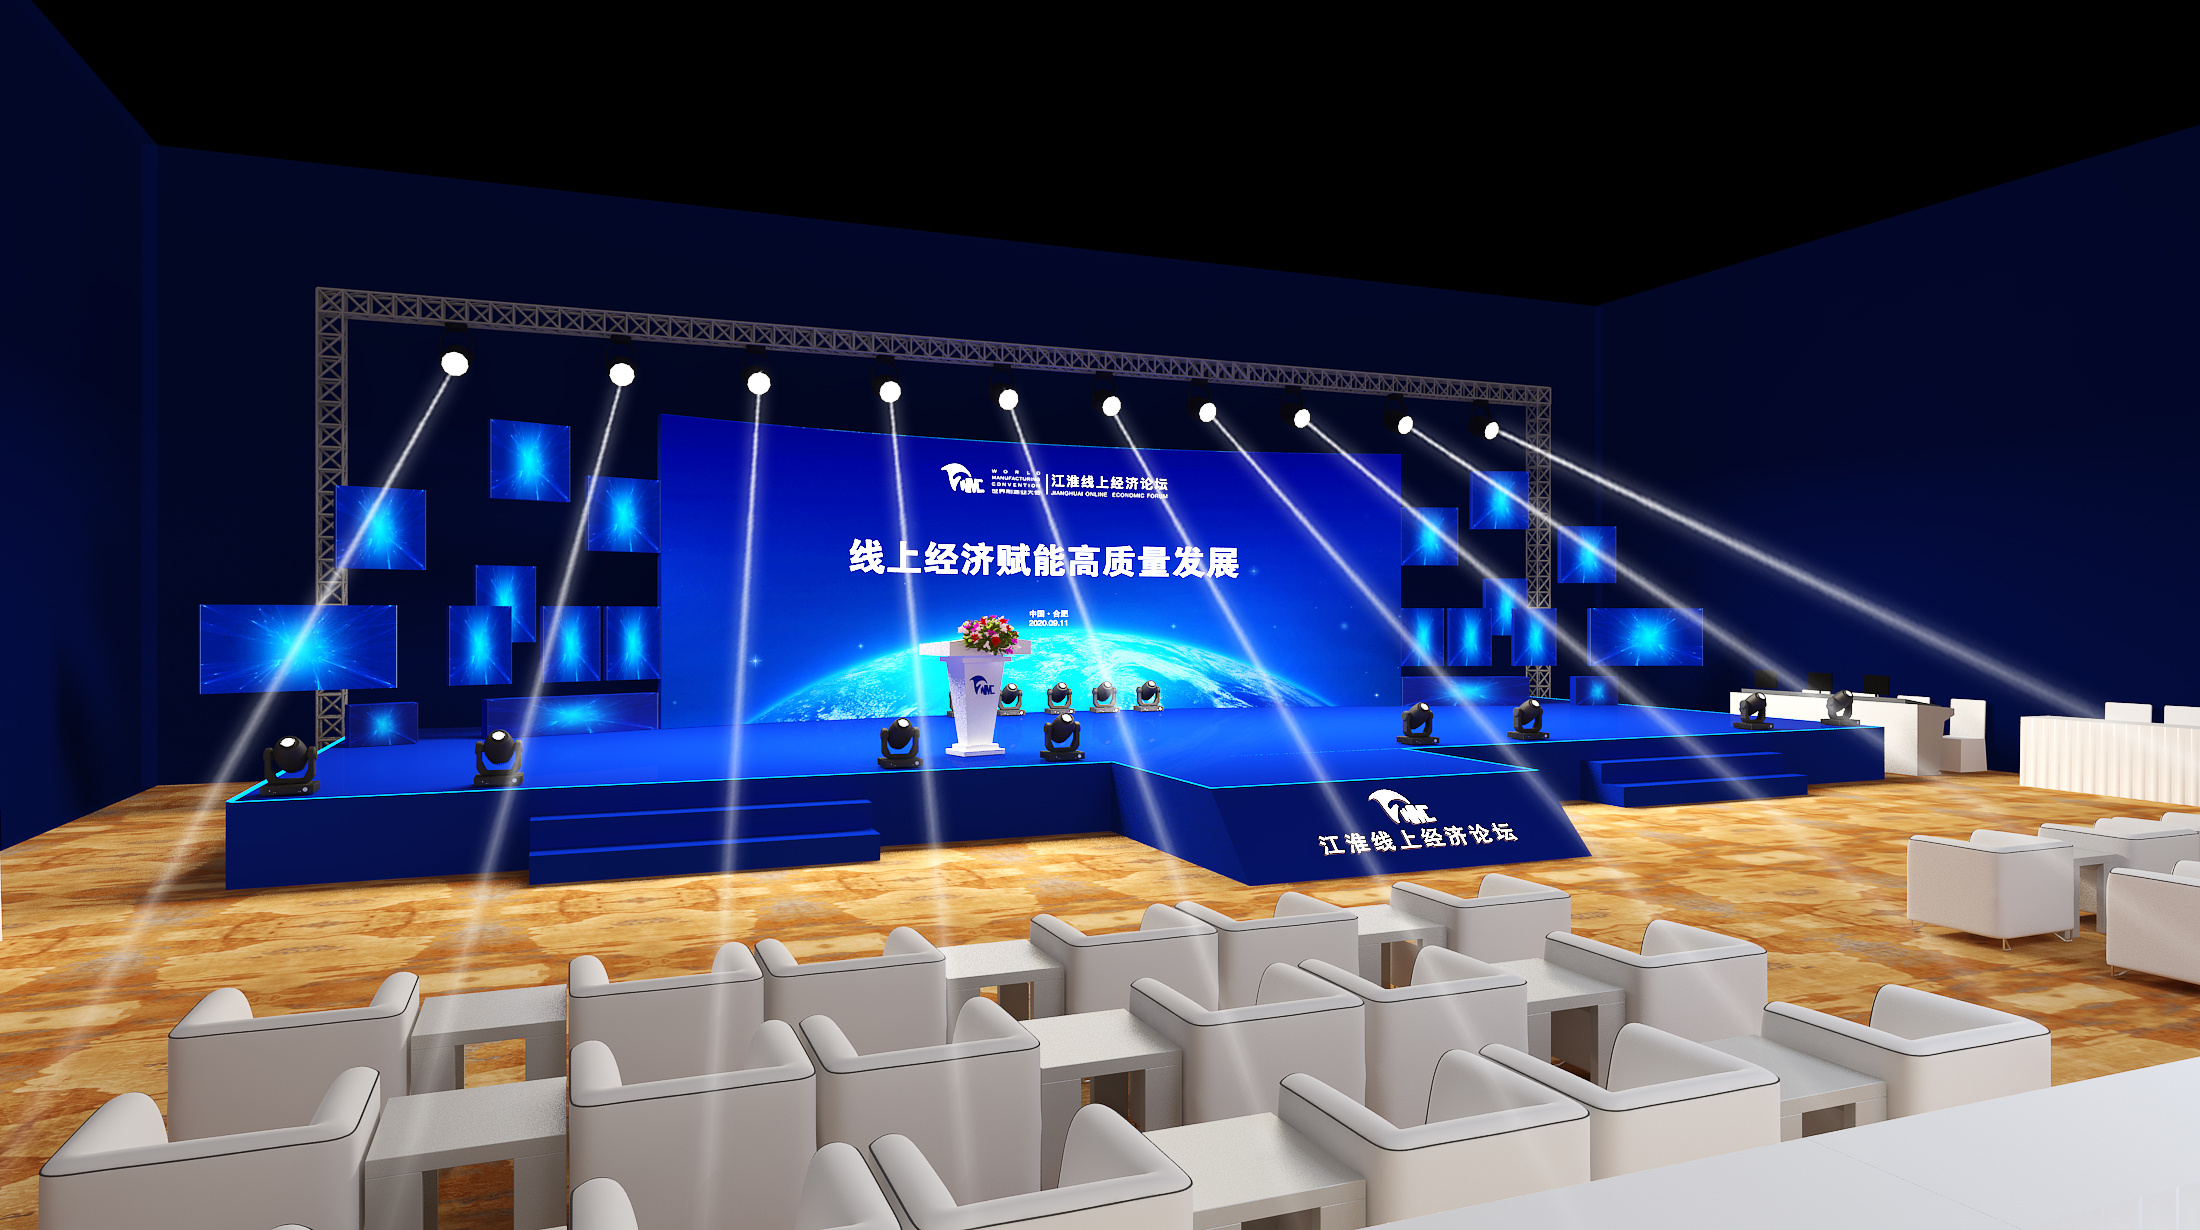 室外会议活动舞台3d效果图|设计-元素谷(OSOGOO)